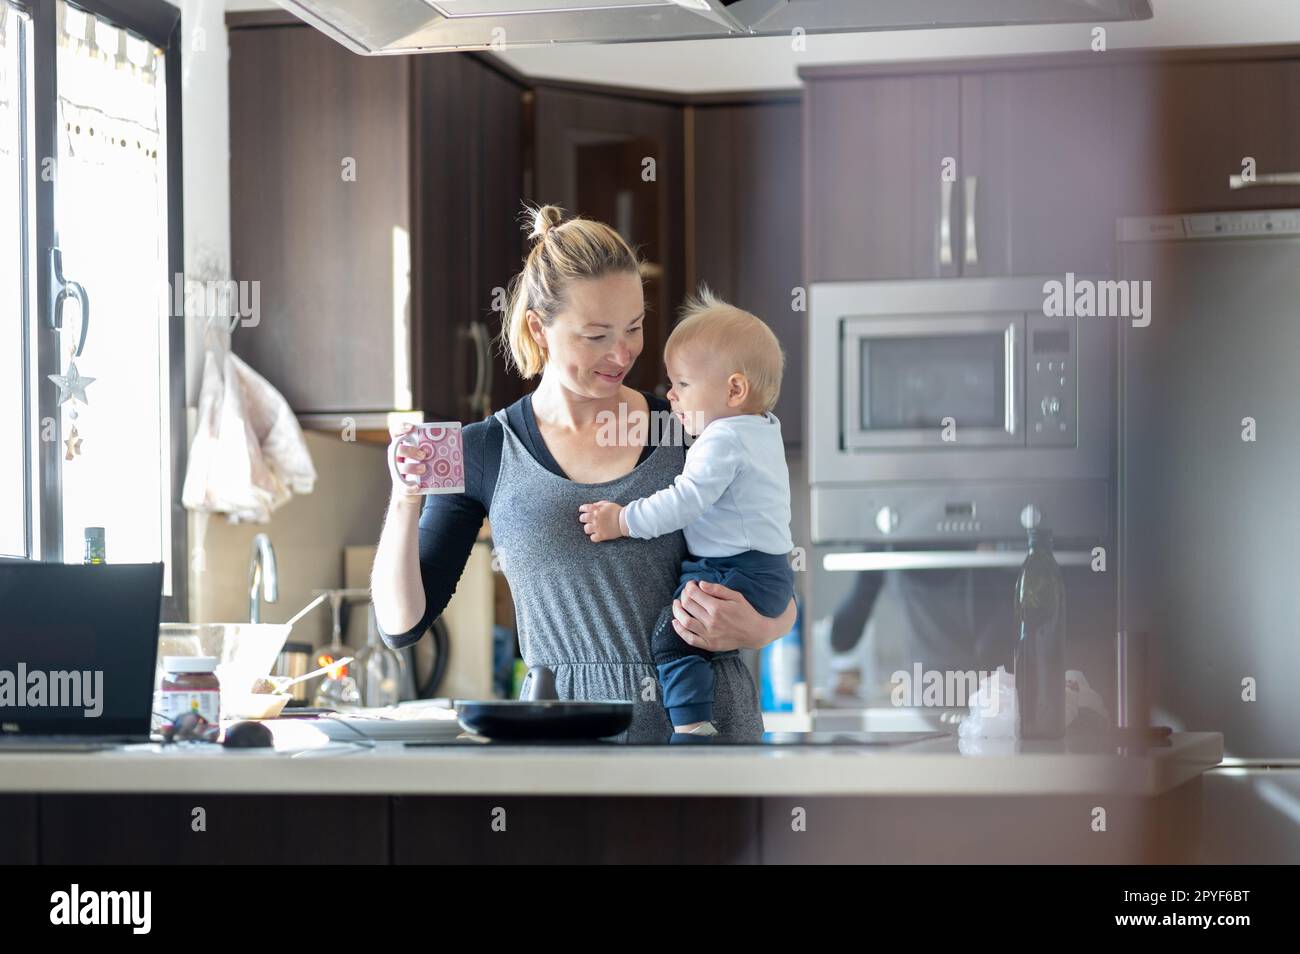 Glückliche Mutter hält ihren kleinen kleinen kleinen Jungen, während sie morgens Kaffee trinkt und Pfannkuchen zum Frühstück in der Hausküche macht. Familienleben, häusliches Lebenskonzept. Stockfoto